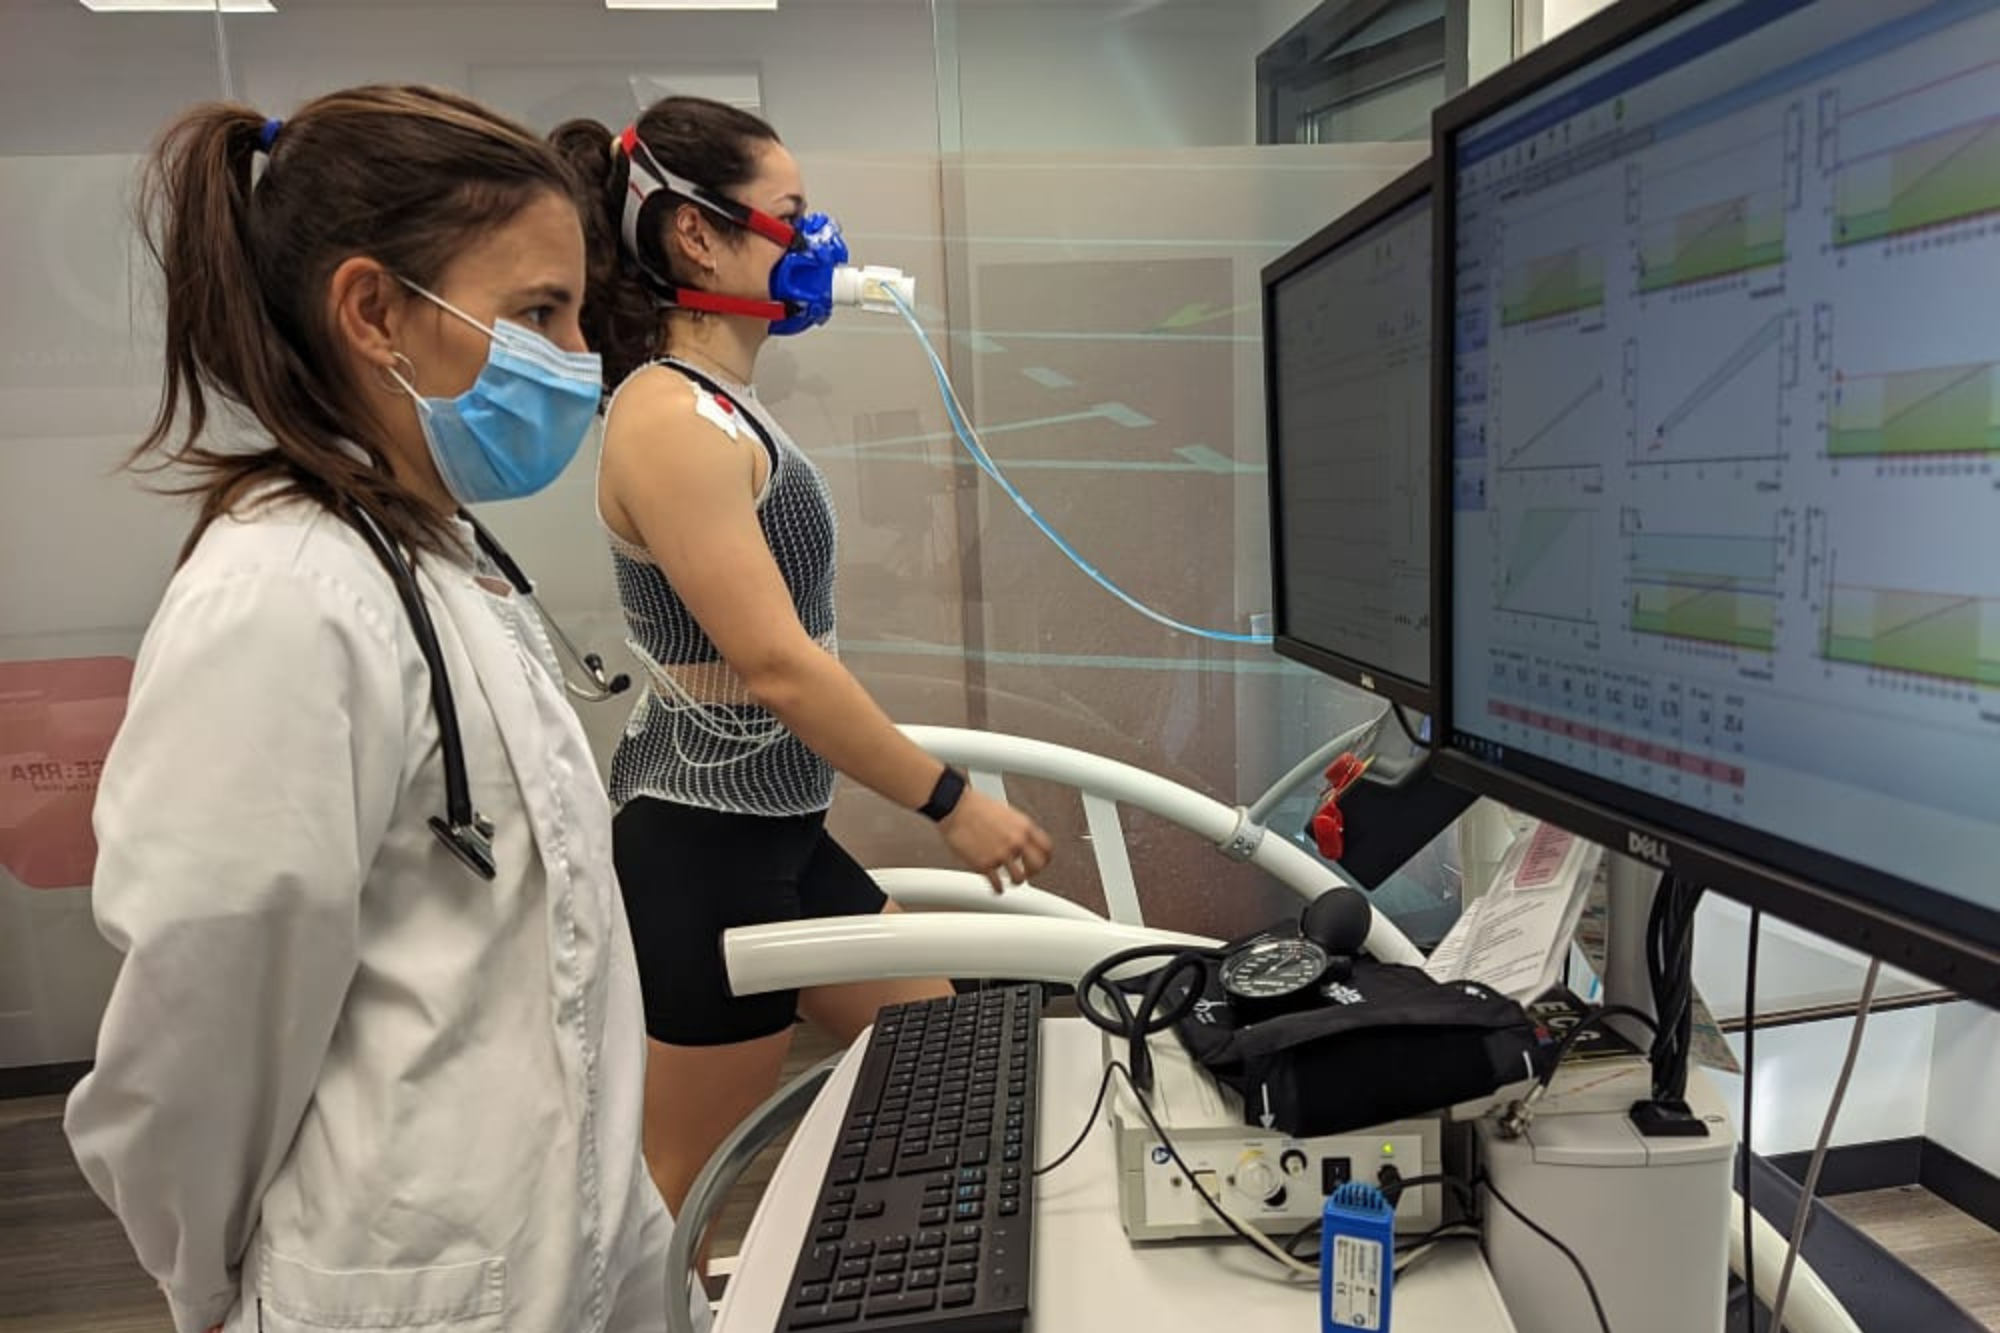 Anna aparece en primer plano a la izquierda de la foto en un laboratorio con una bata blanca de médico y visualizando unos monitores con datos. Detrás de ella, al fondo, se ve a una deportista en un tapiz rodante realizando una prueba de esfuerzo, con una máscara para medir gases.